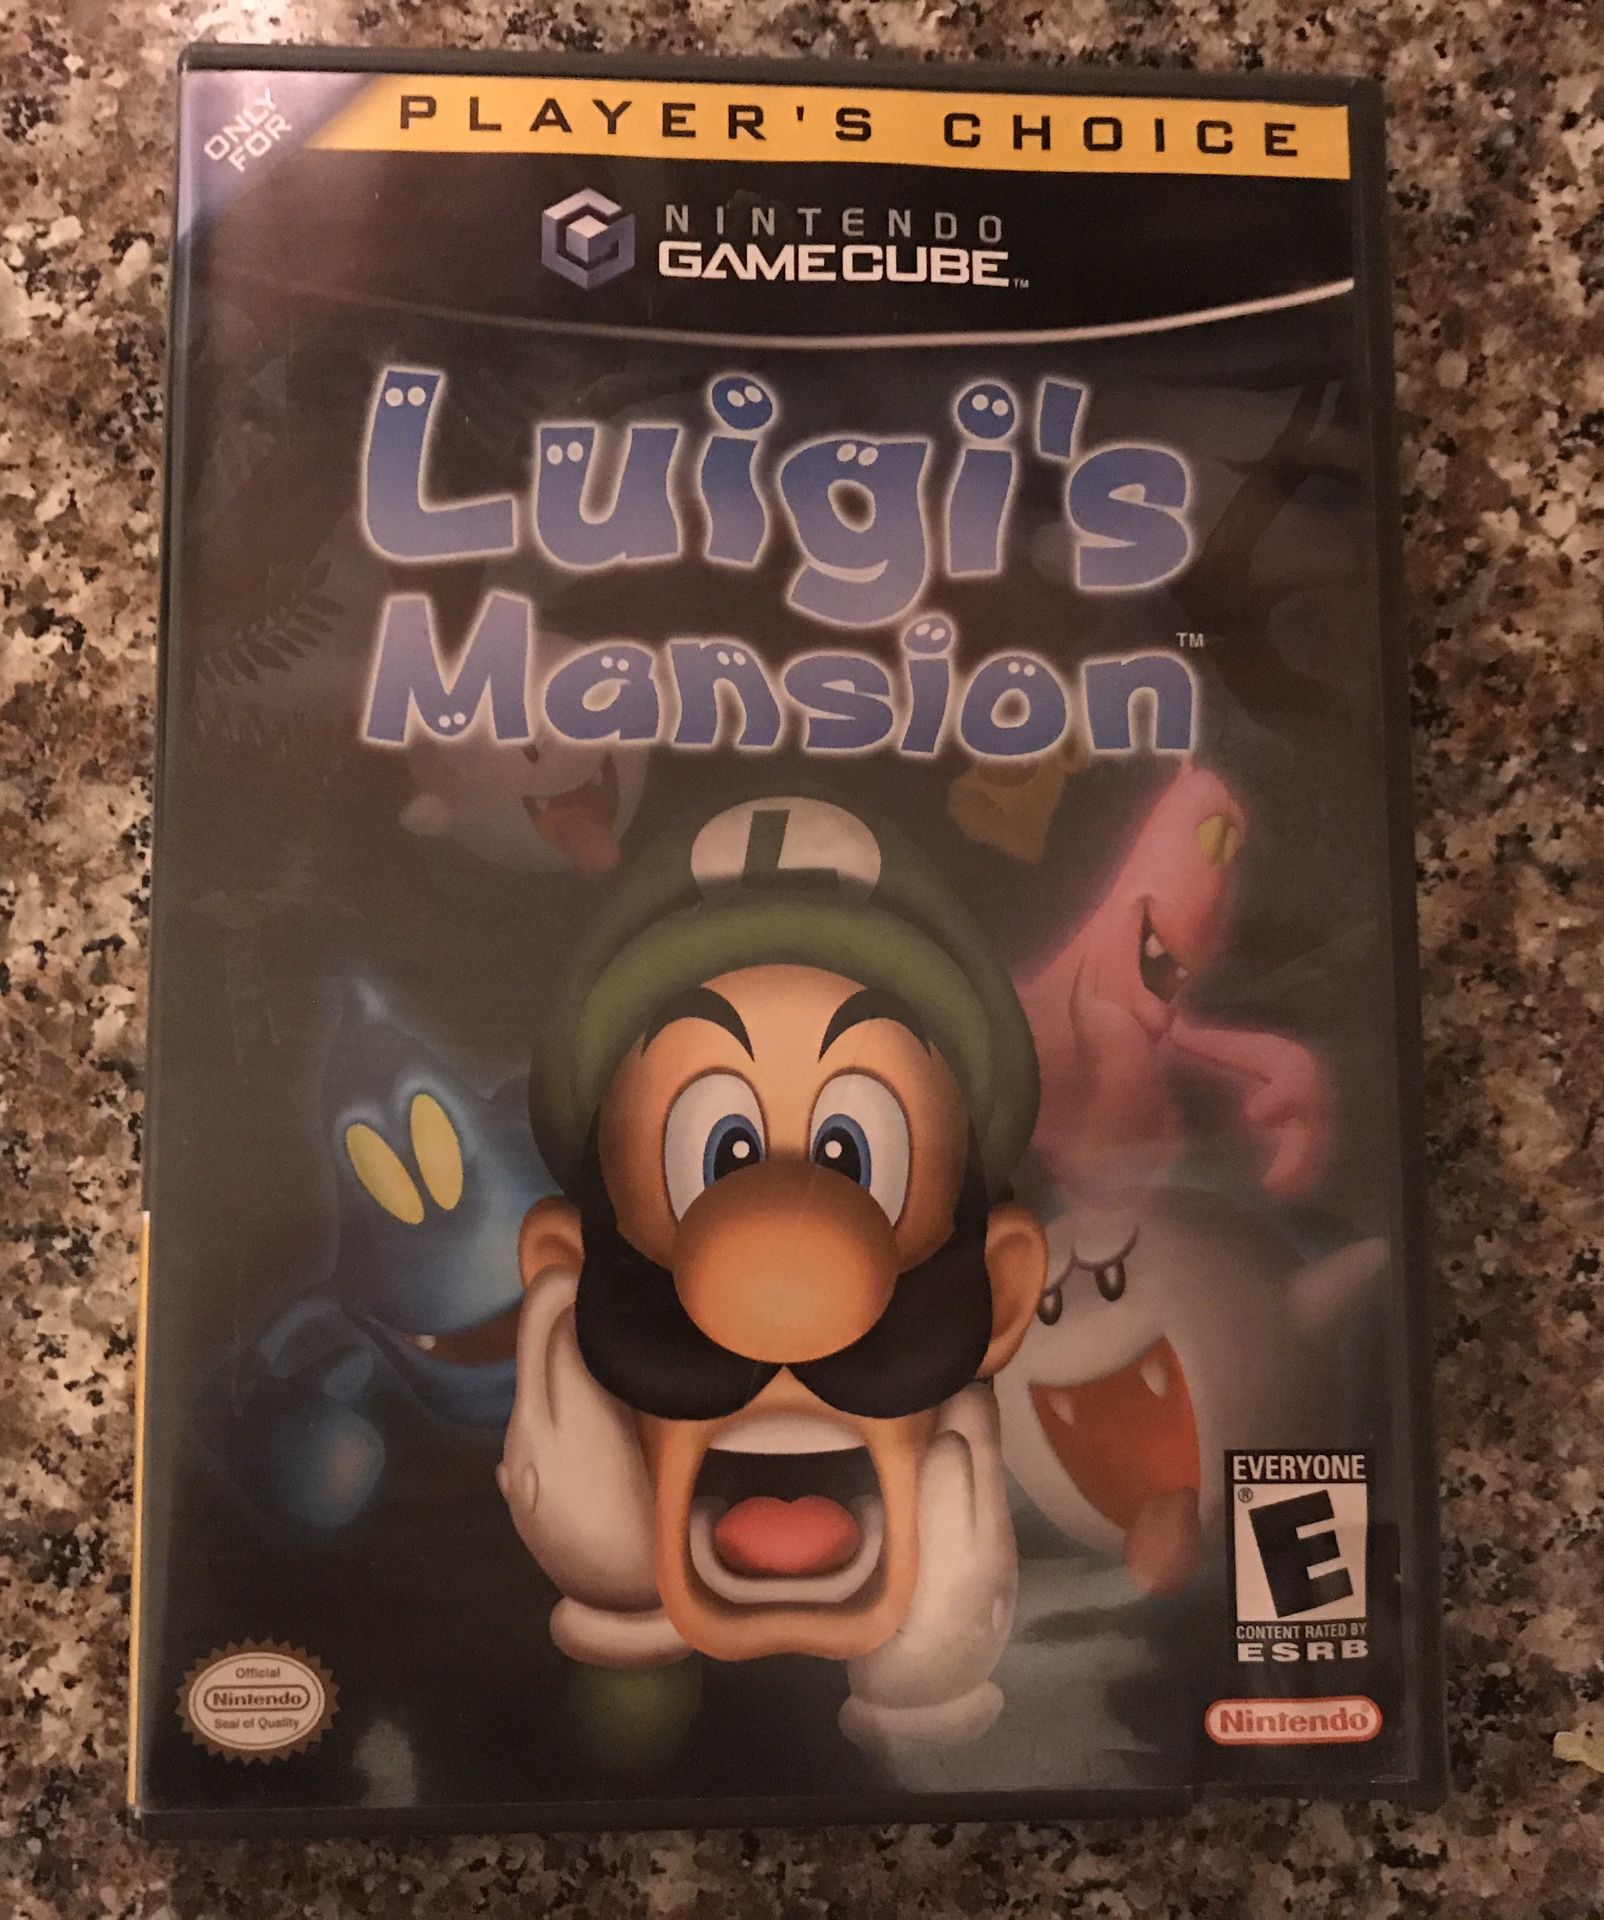 Nintendo GameCube Luigi’s Mansion Video Game